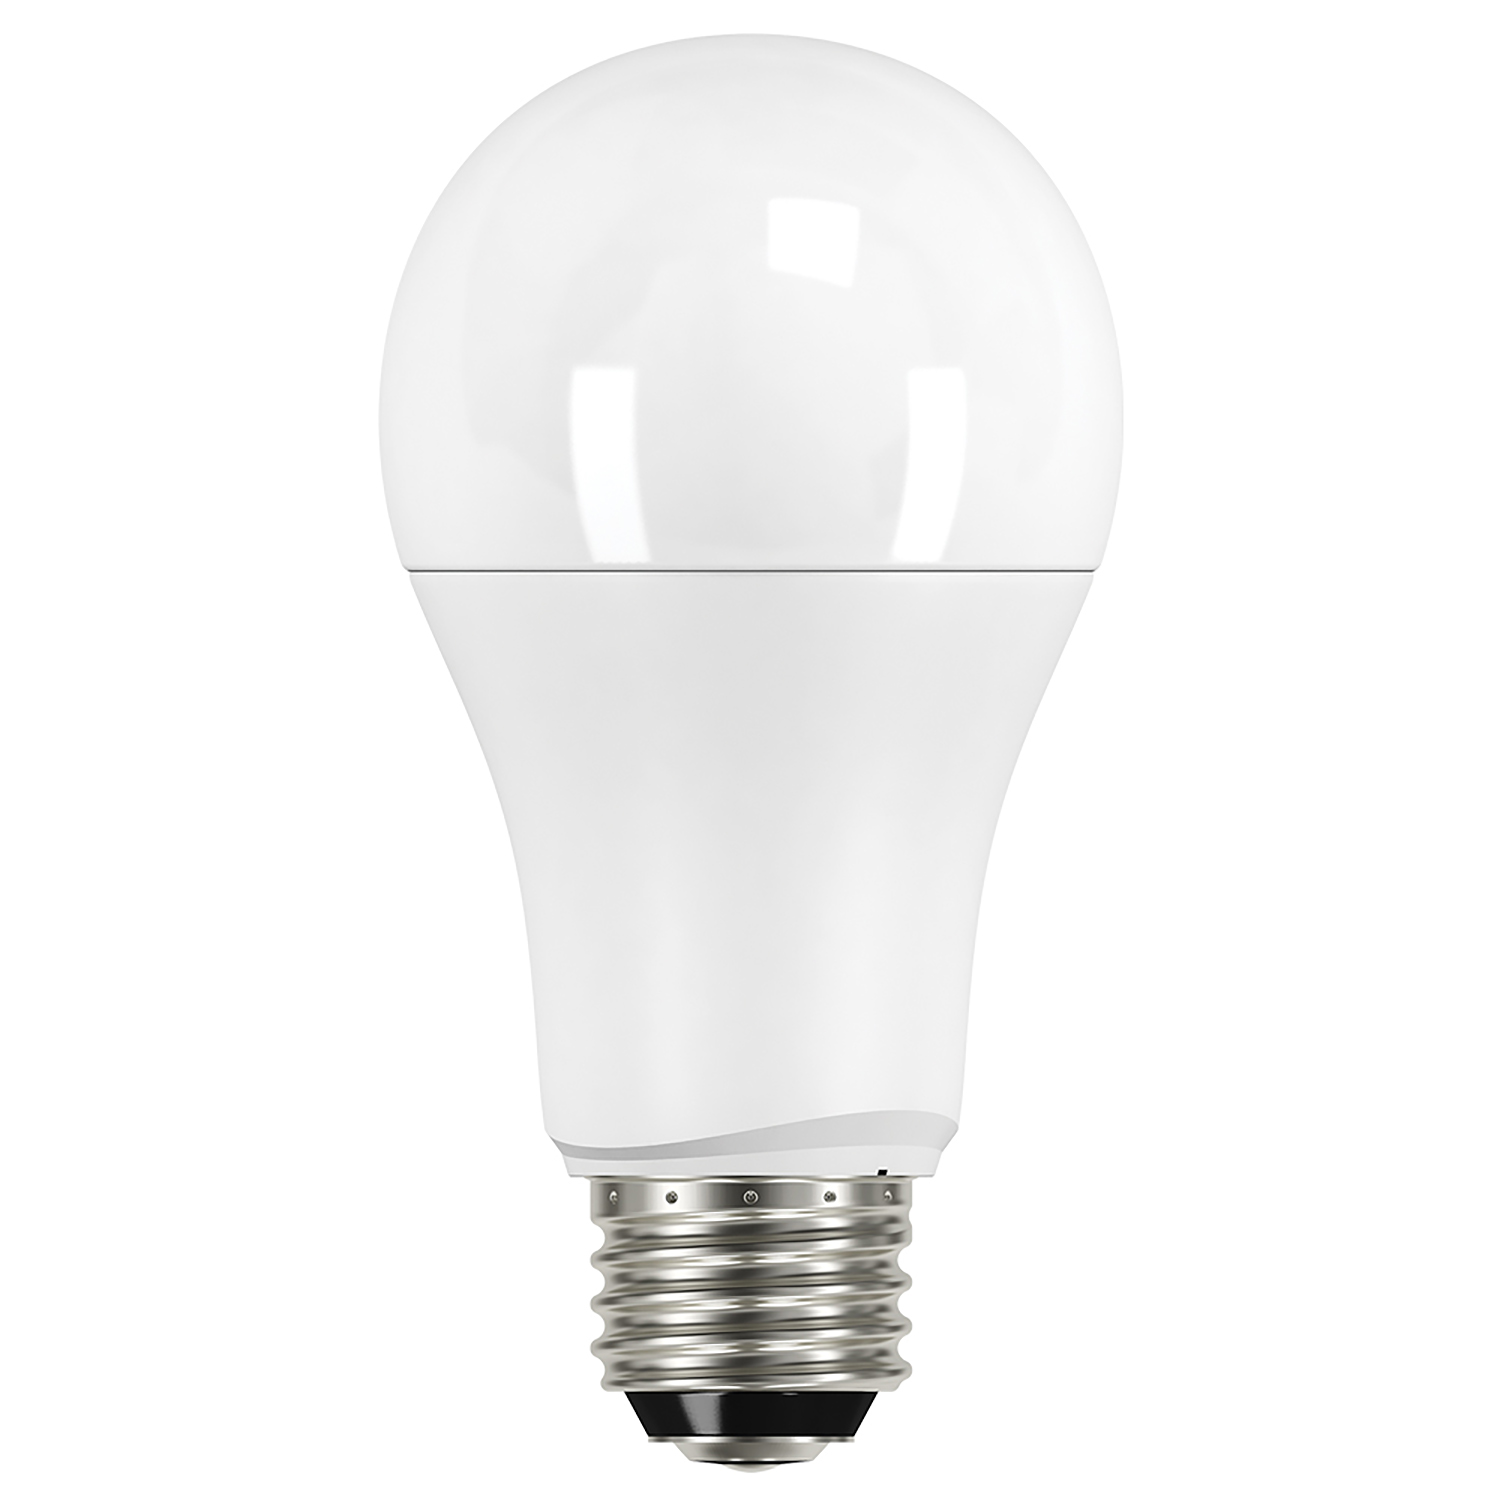 A Series Bulbs